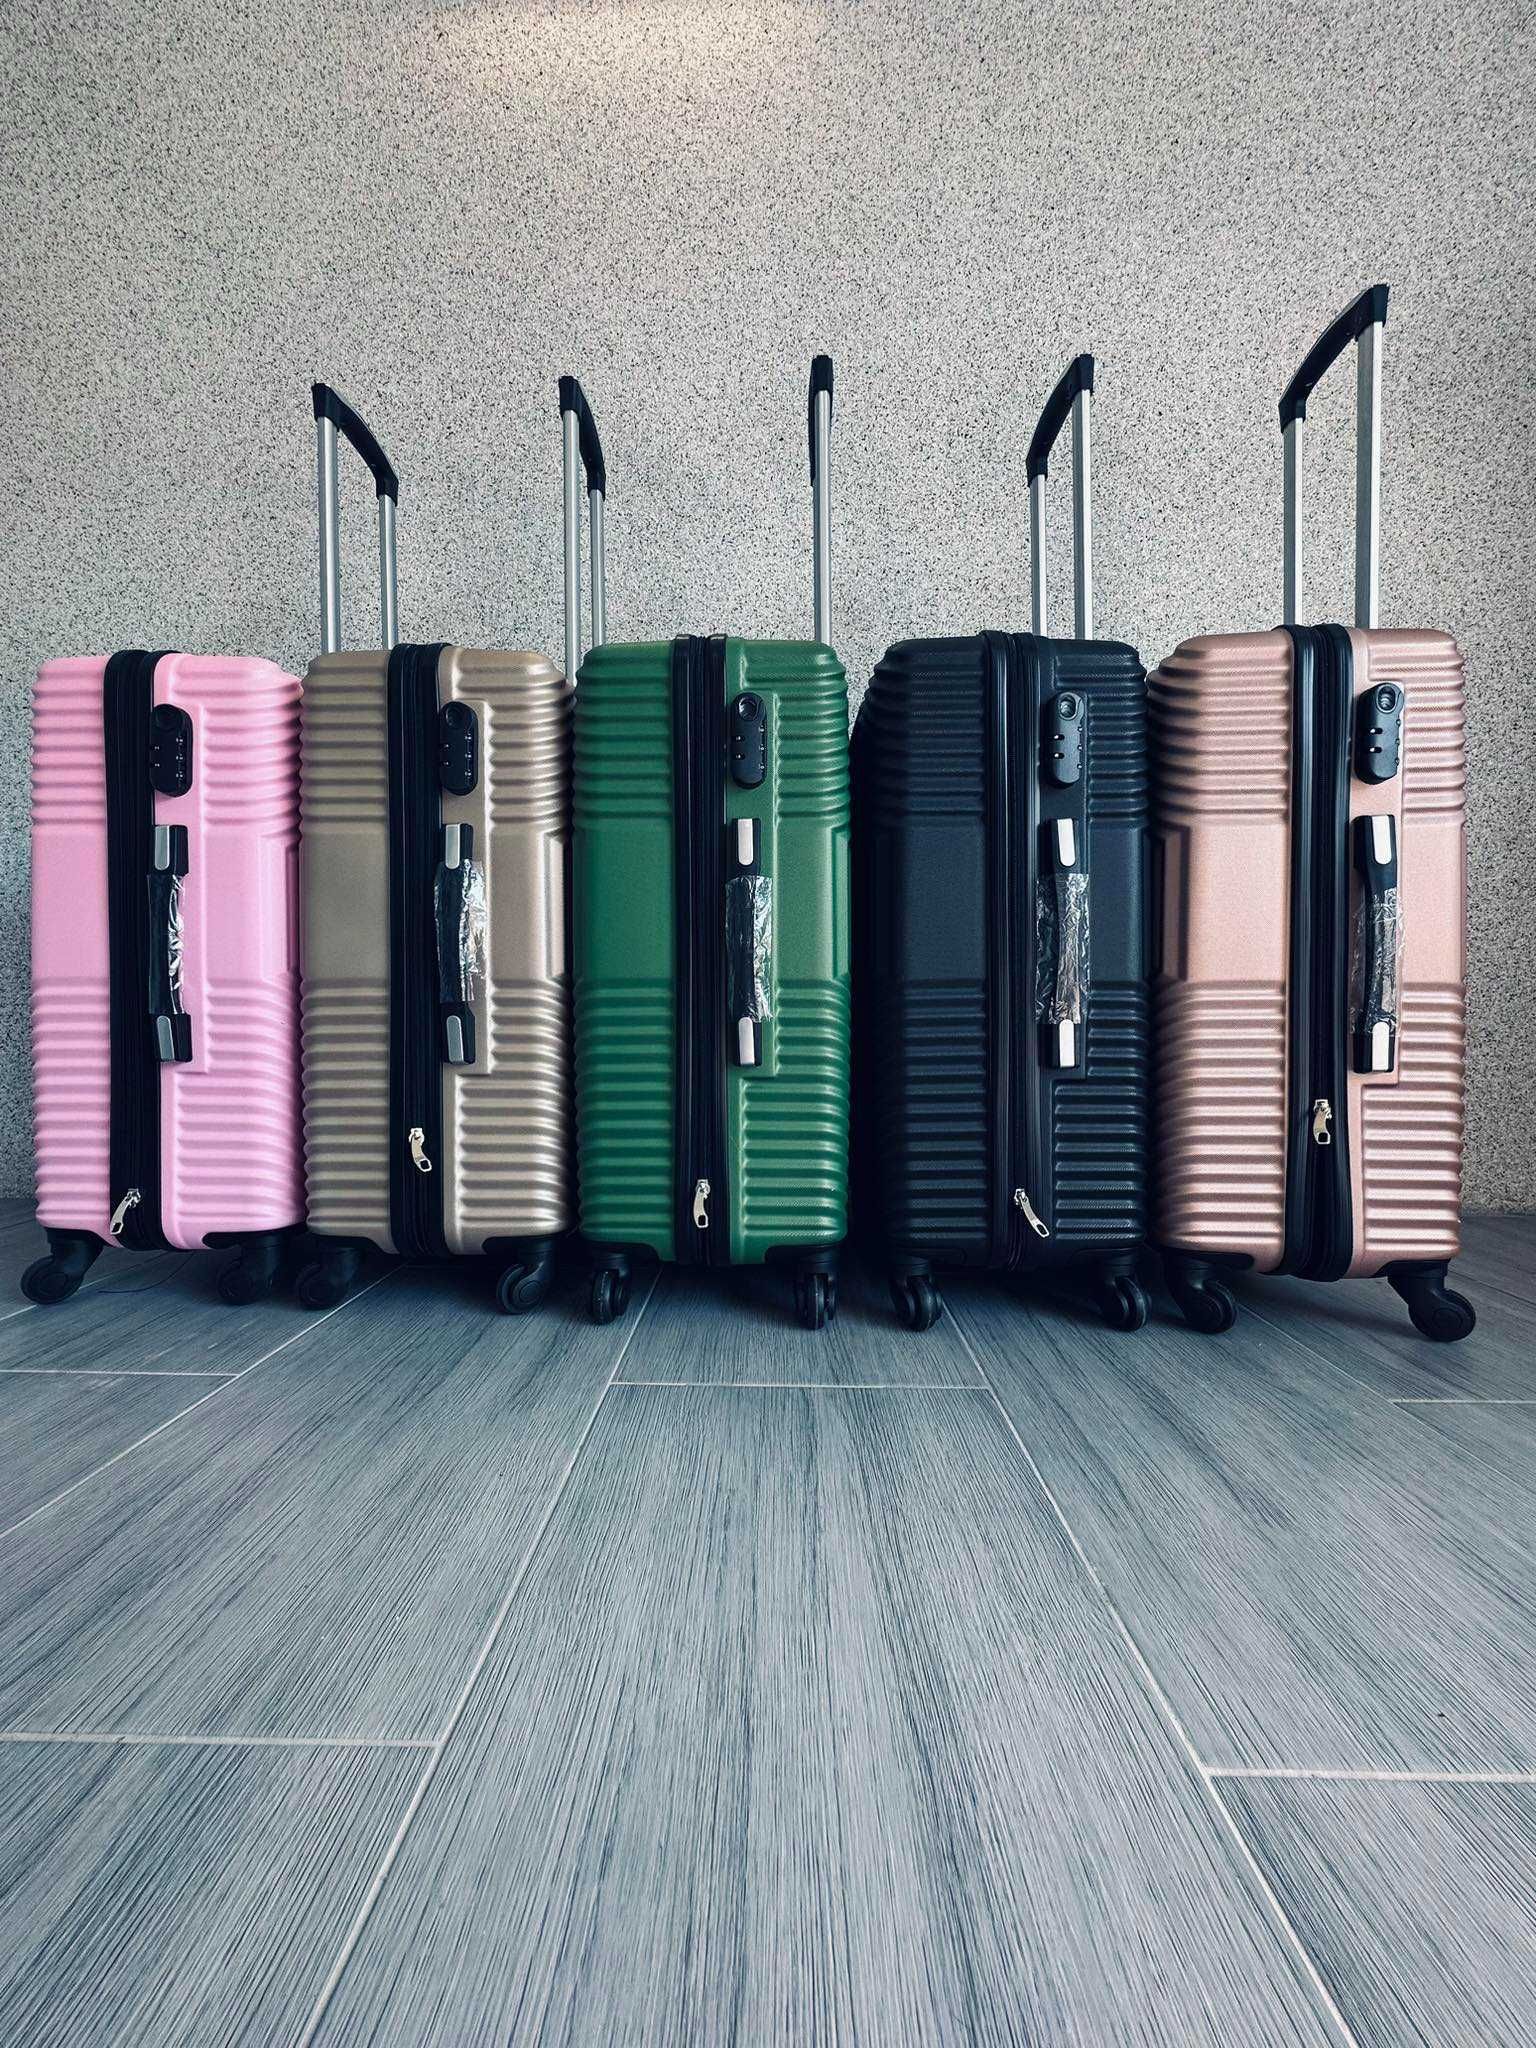 Nowa walizka / walizki/ bagaż - wielka wyprzedaż!